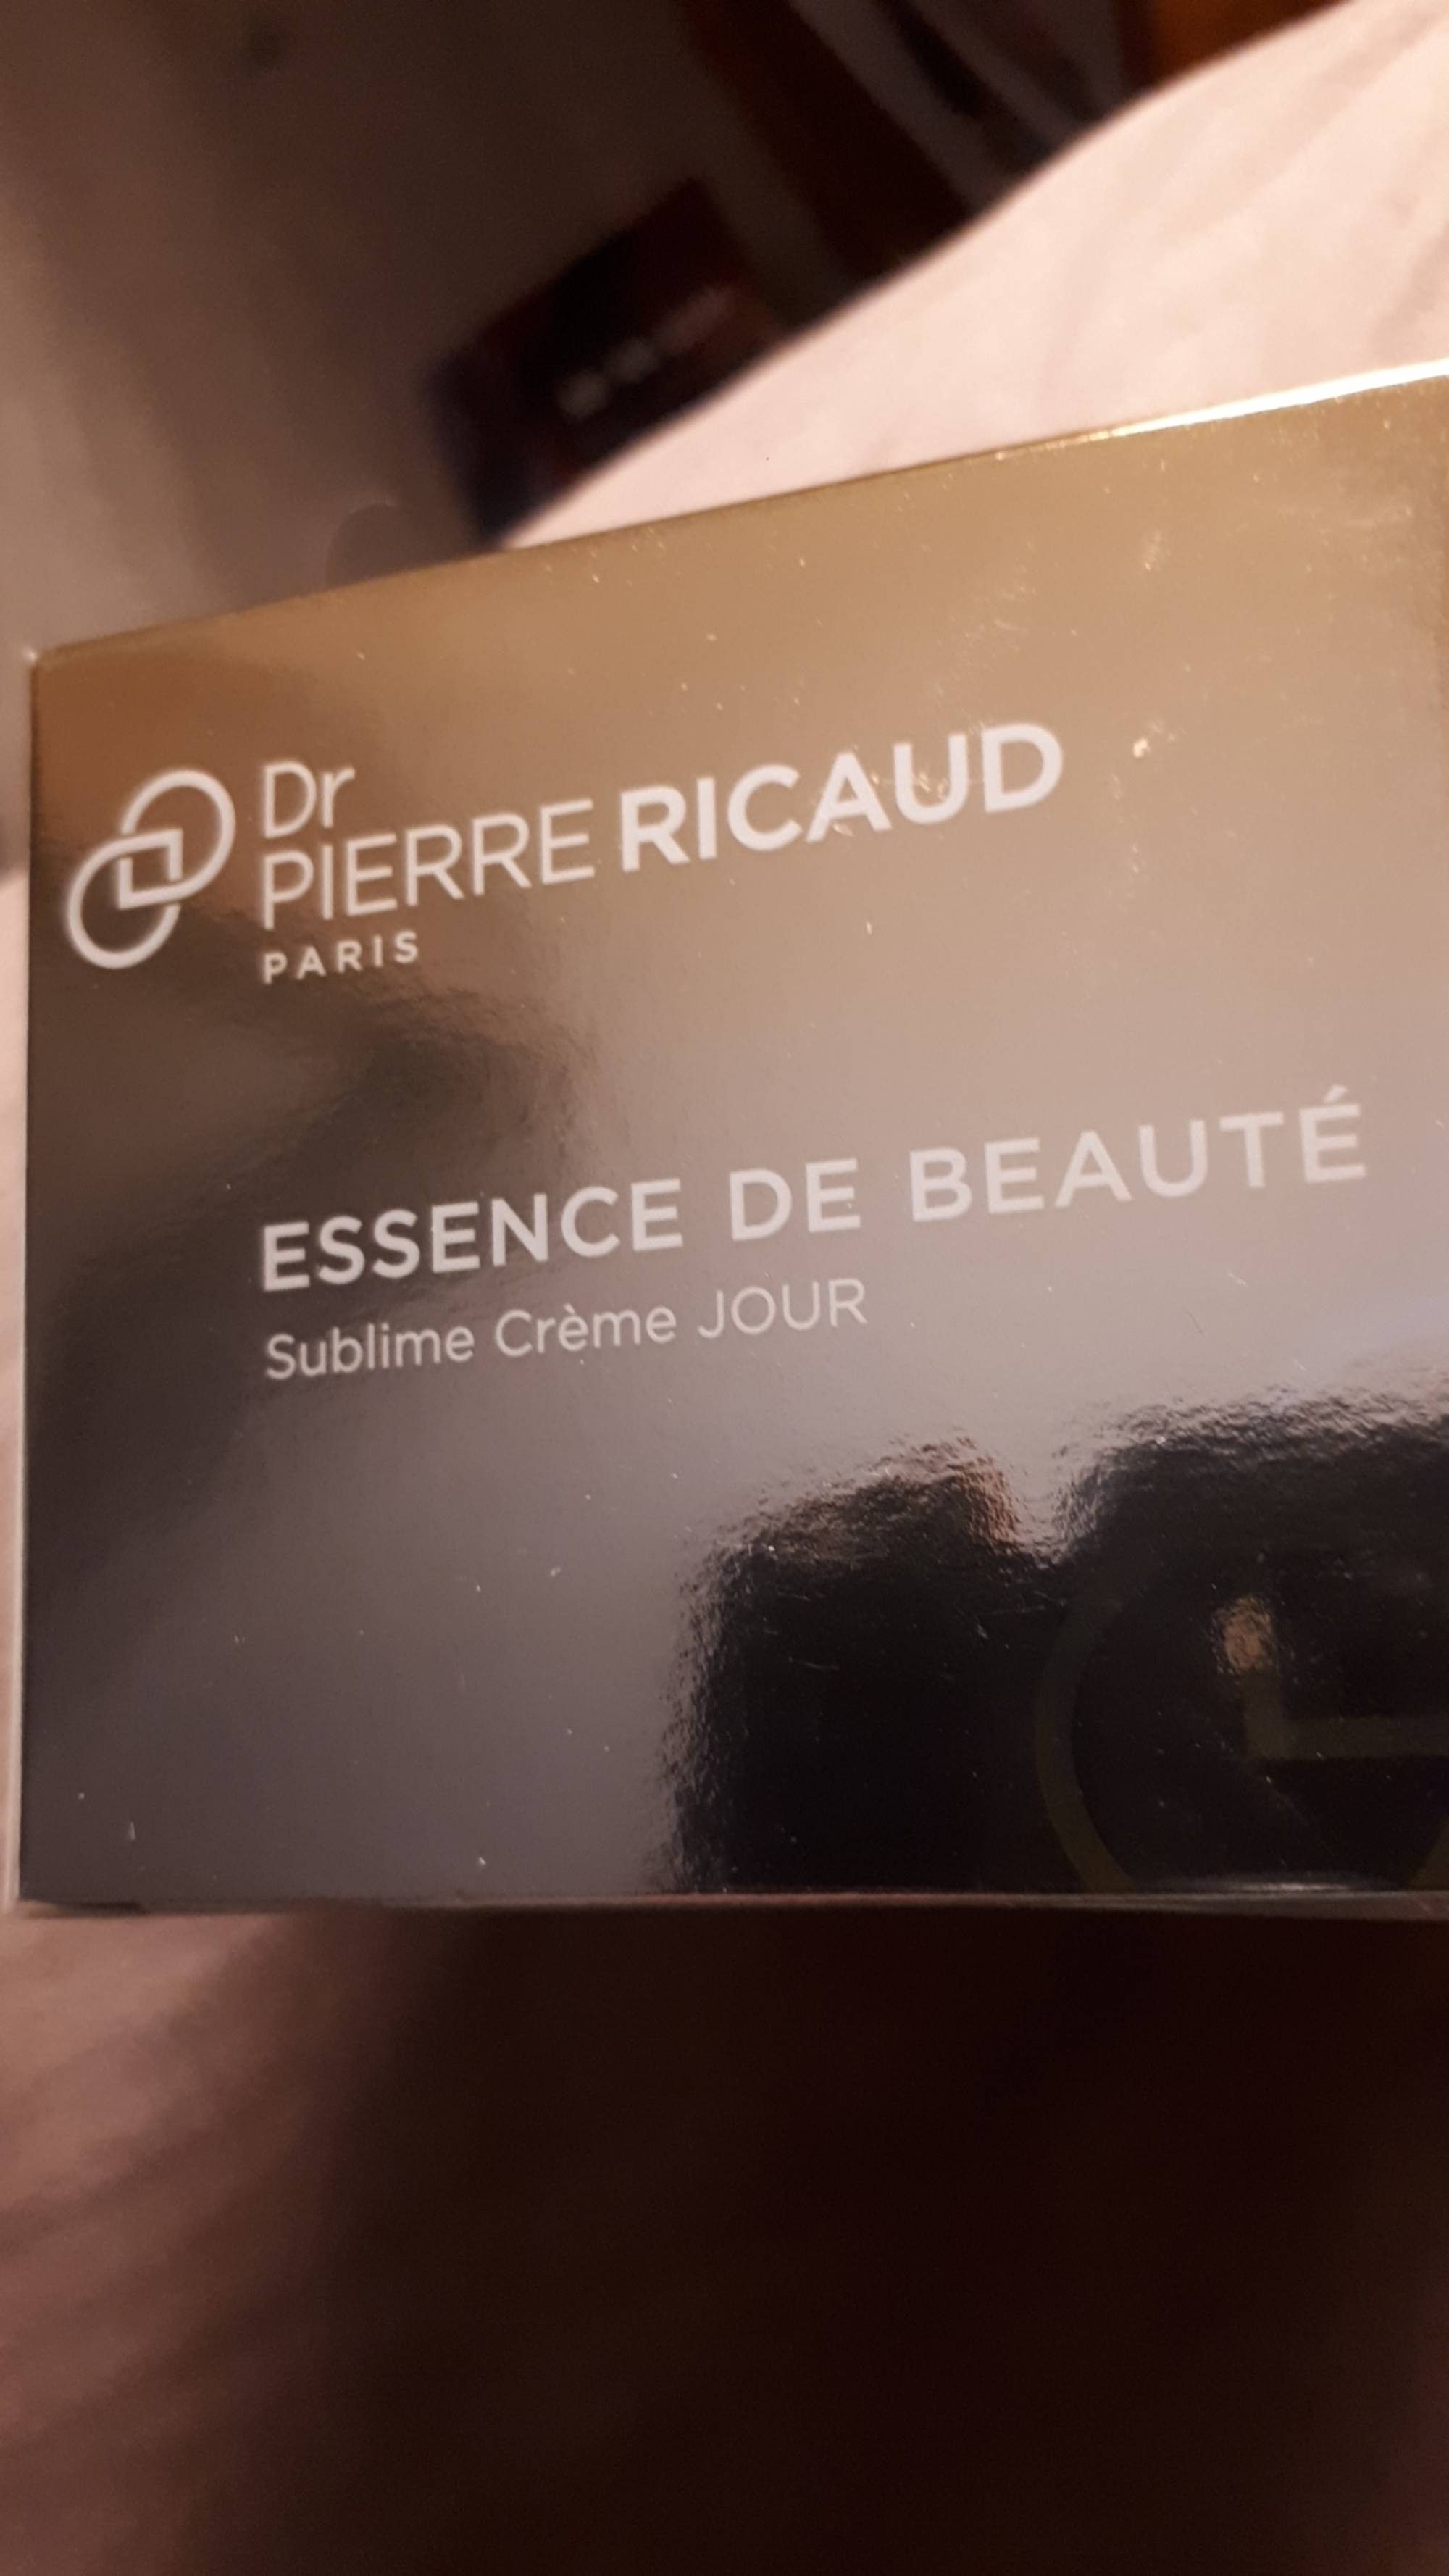 DR PIERRE RICAUD PARIS - Essence de beauté - Sublime crème jour